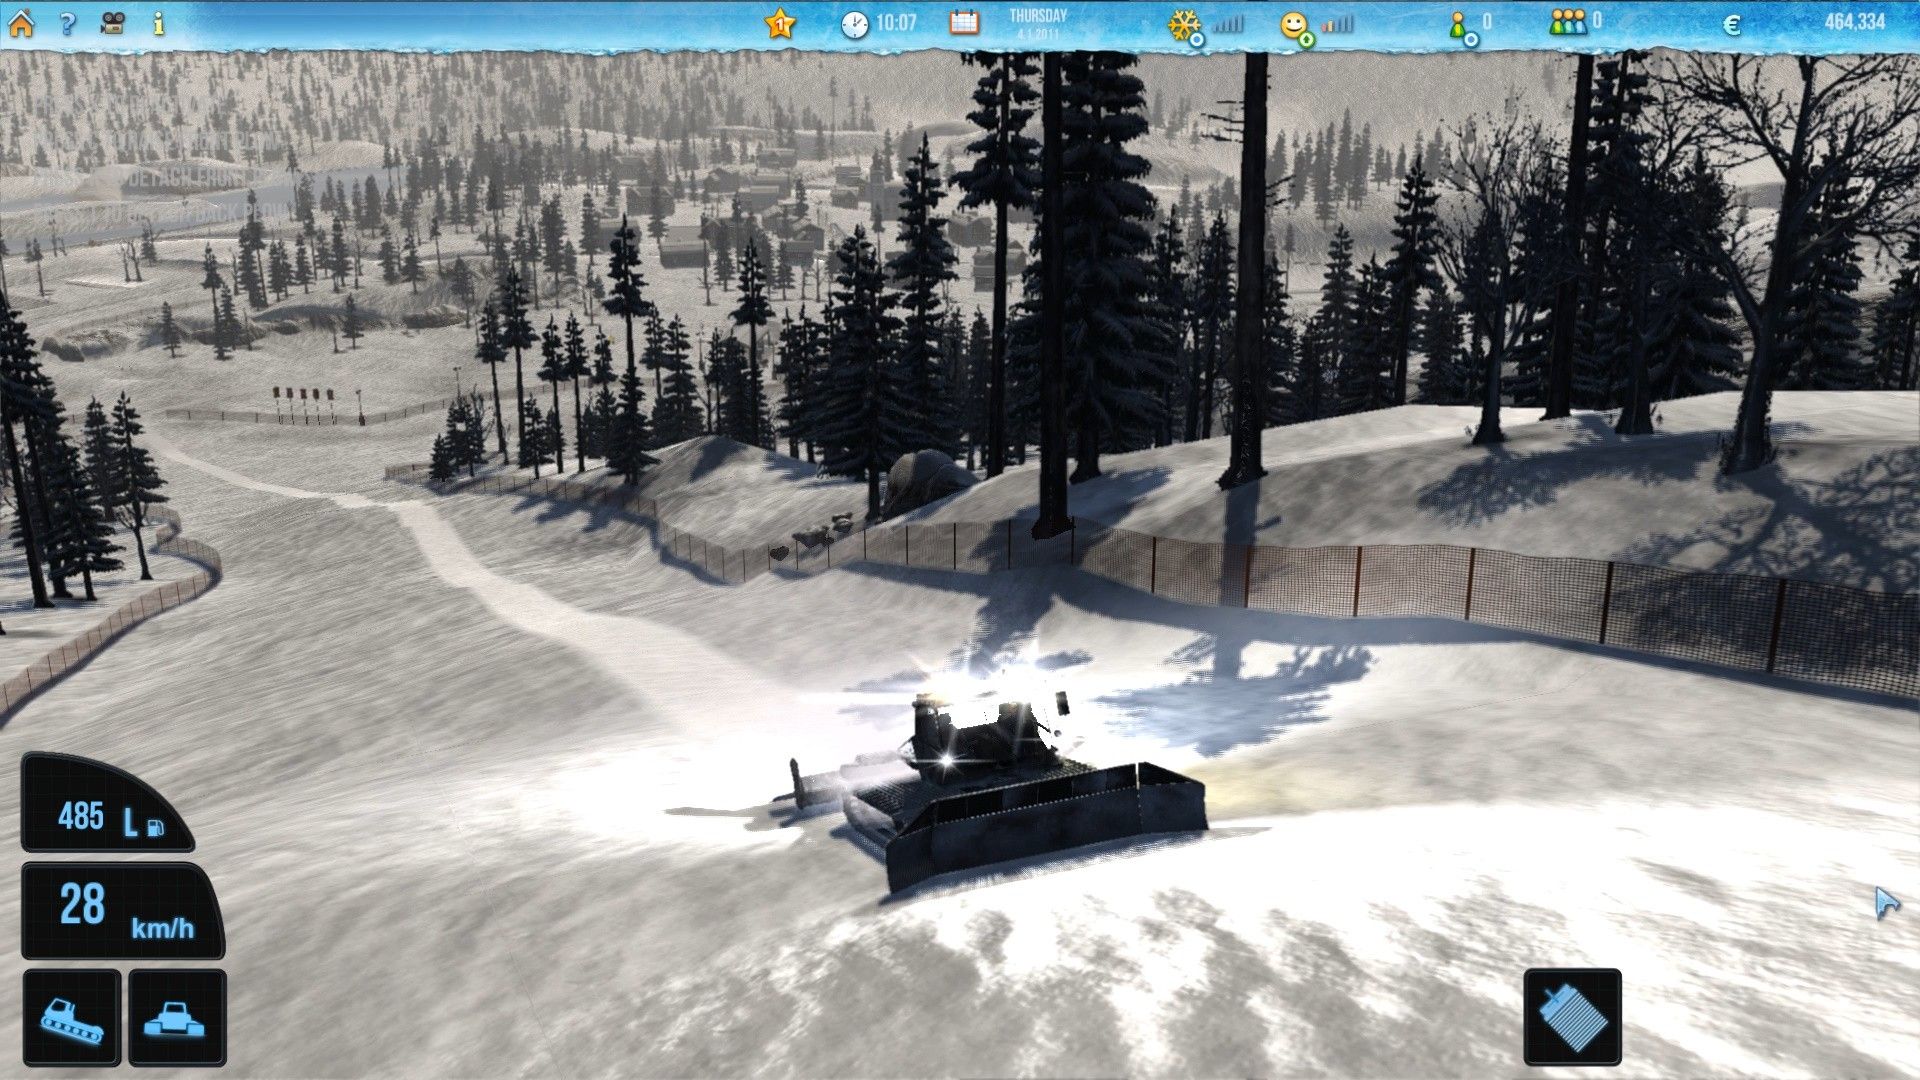 Скриншот-1 из игры Ski-World Simulator